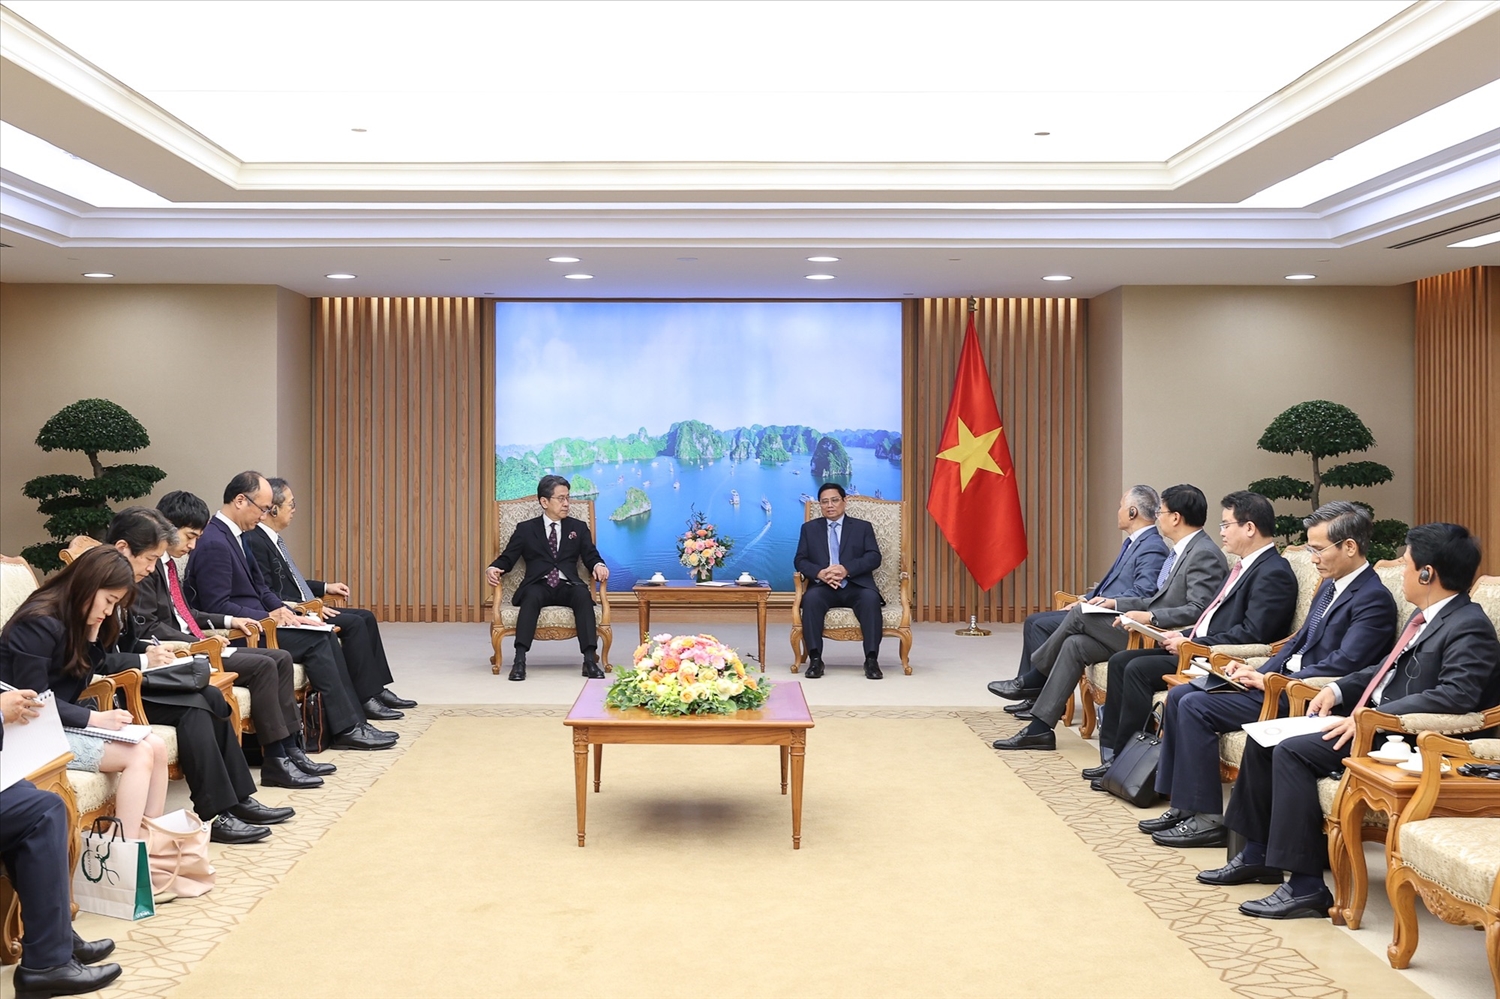 Chủ tịch JBIC bày tỏ trân trọng những nỗ lực, kết quả mà Việt Nam đạt được trong bối cảnh khó khăn vừa qua - Ảnh: VGP/Nhật Bắc